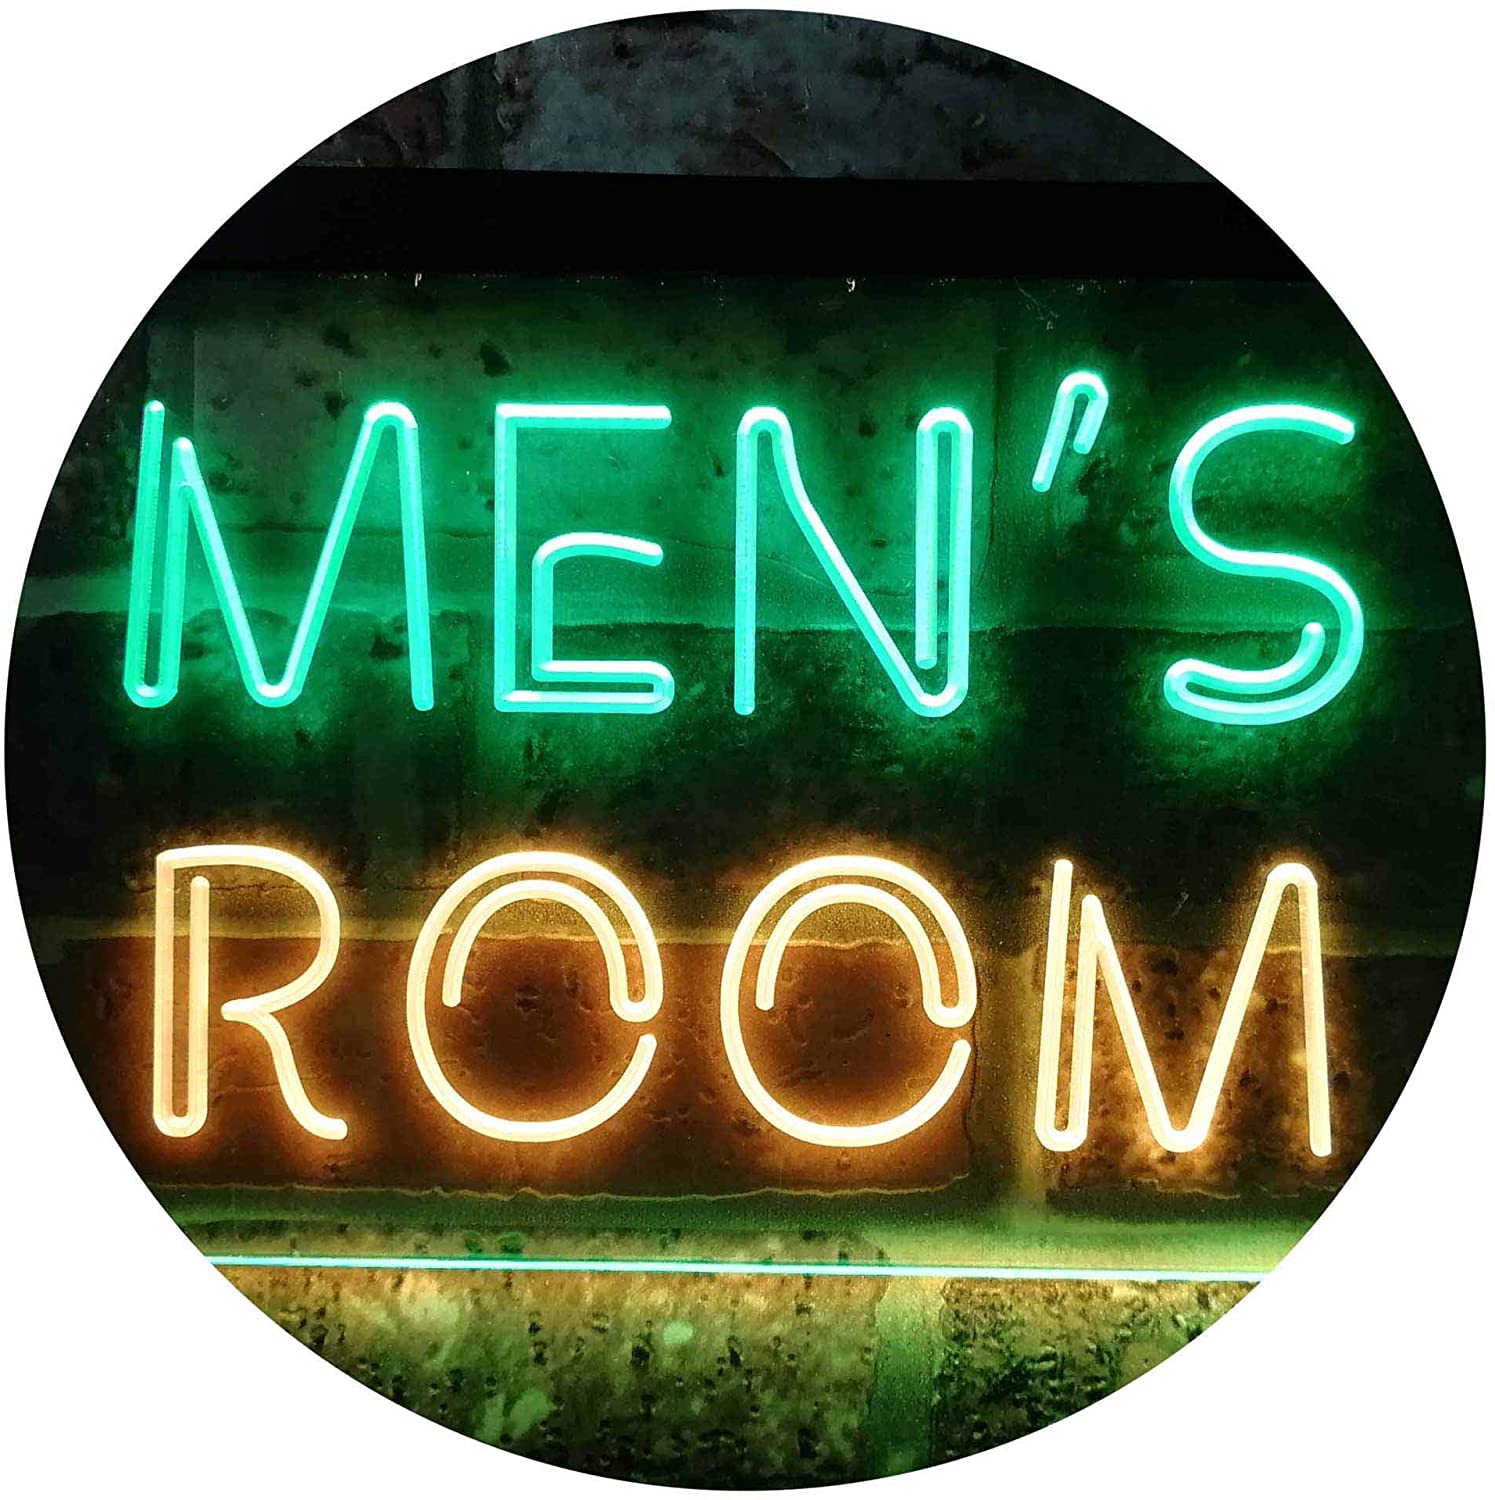 Bathroom Restroom Men's Room LED Neon Light Sign - Way Up Gifts